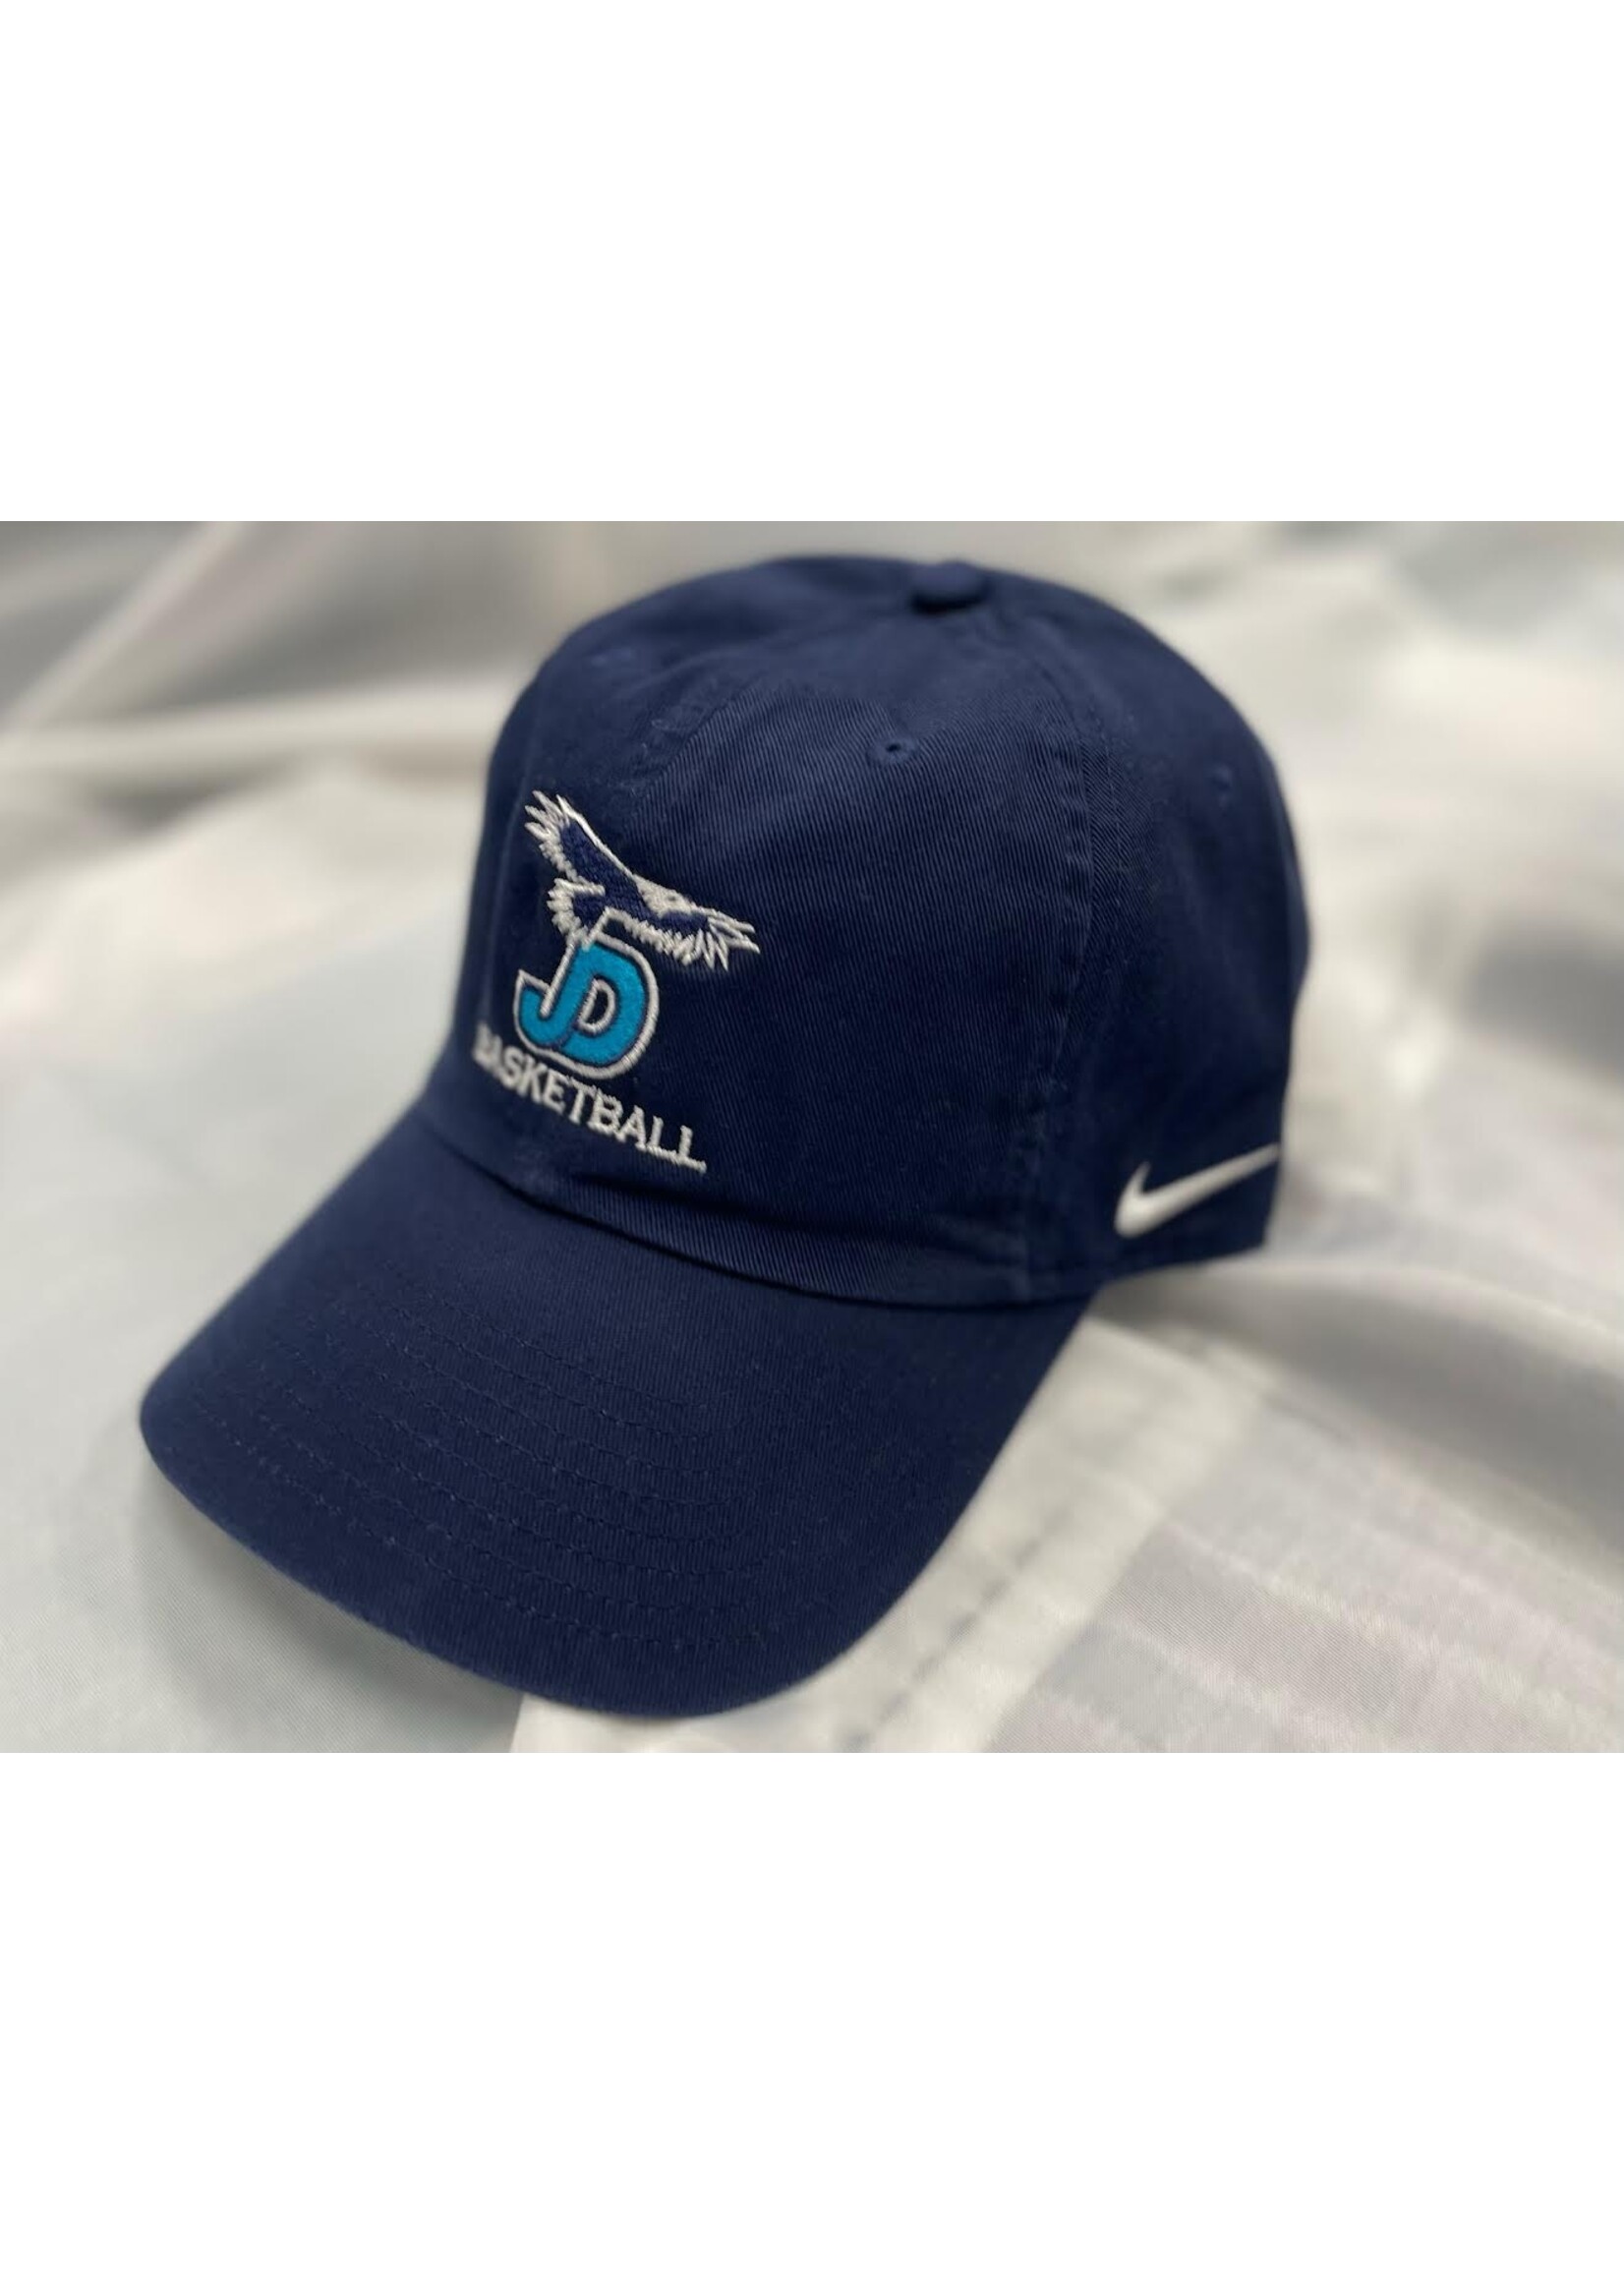 NON-UNIFORM Hat - Custom Nike Basketball Campus Cap - Men’s/Unisex